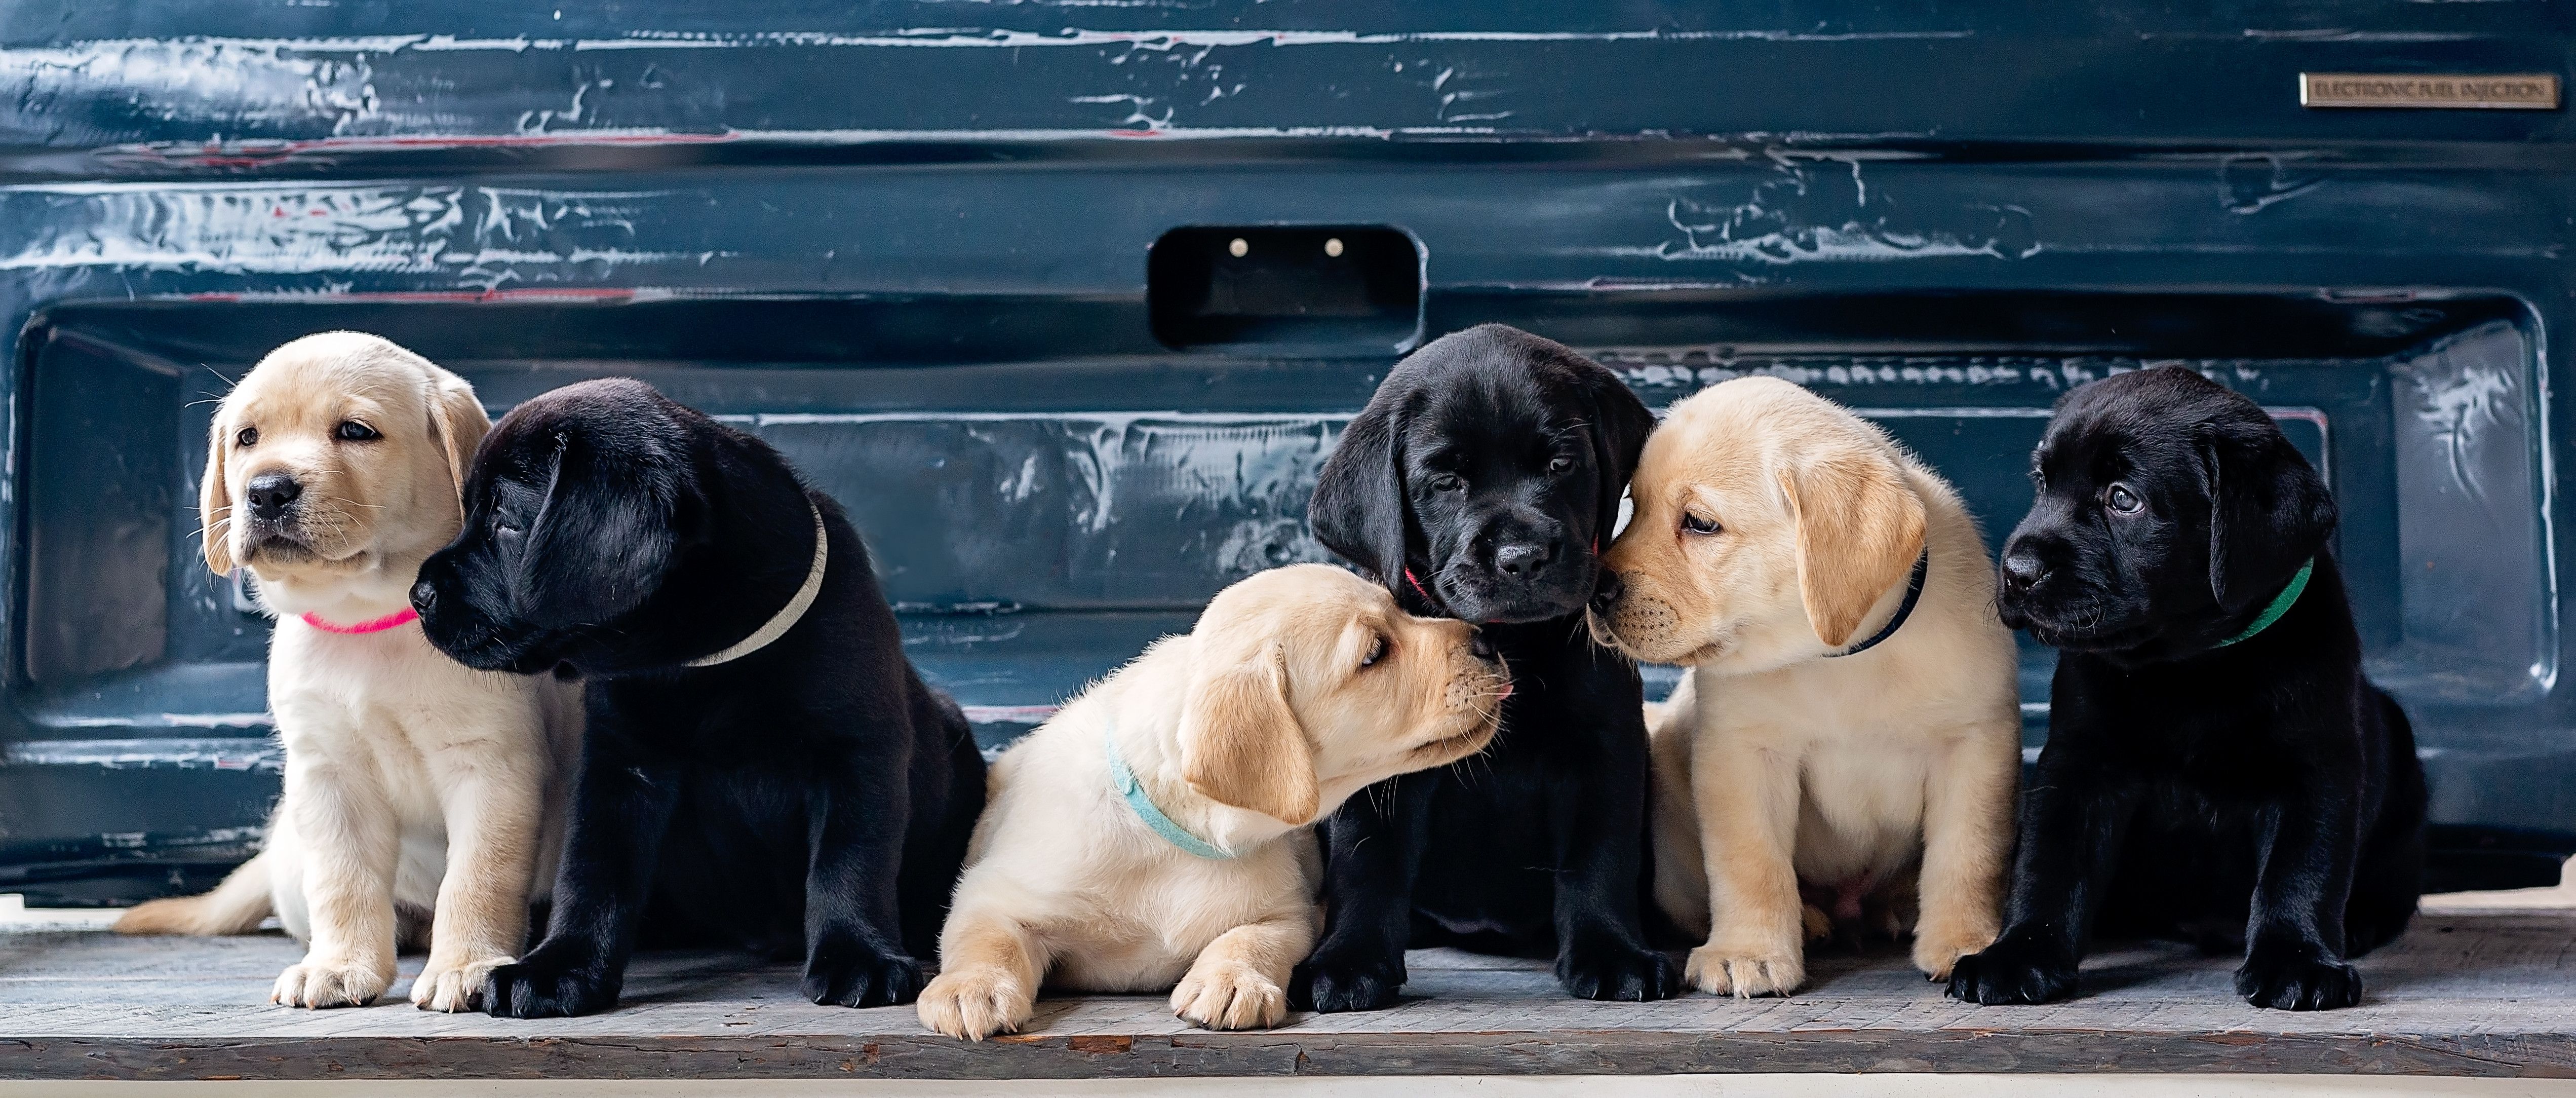 Puppies 4K Wallpaper, Labrador Retriever, Cute dogs, Labrador puppies, 5K, Animals